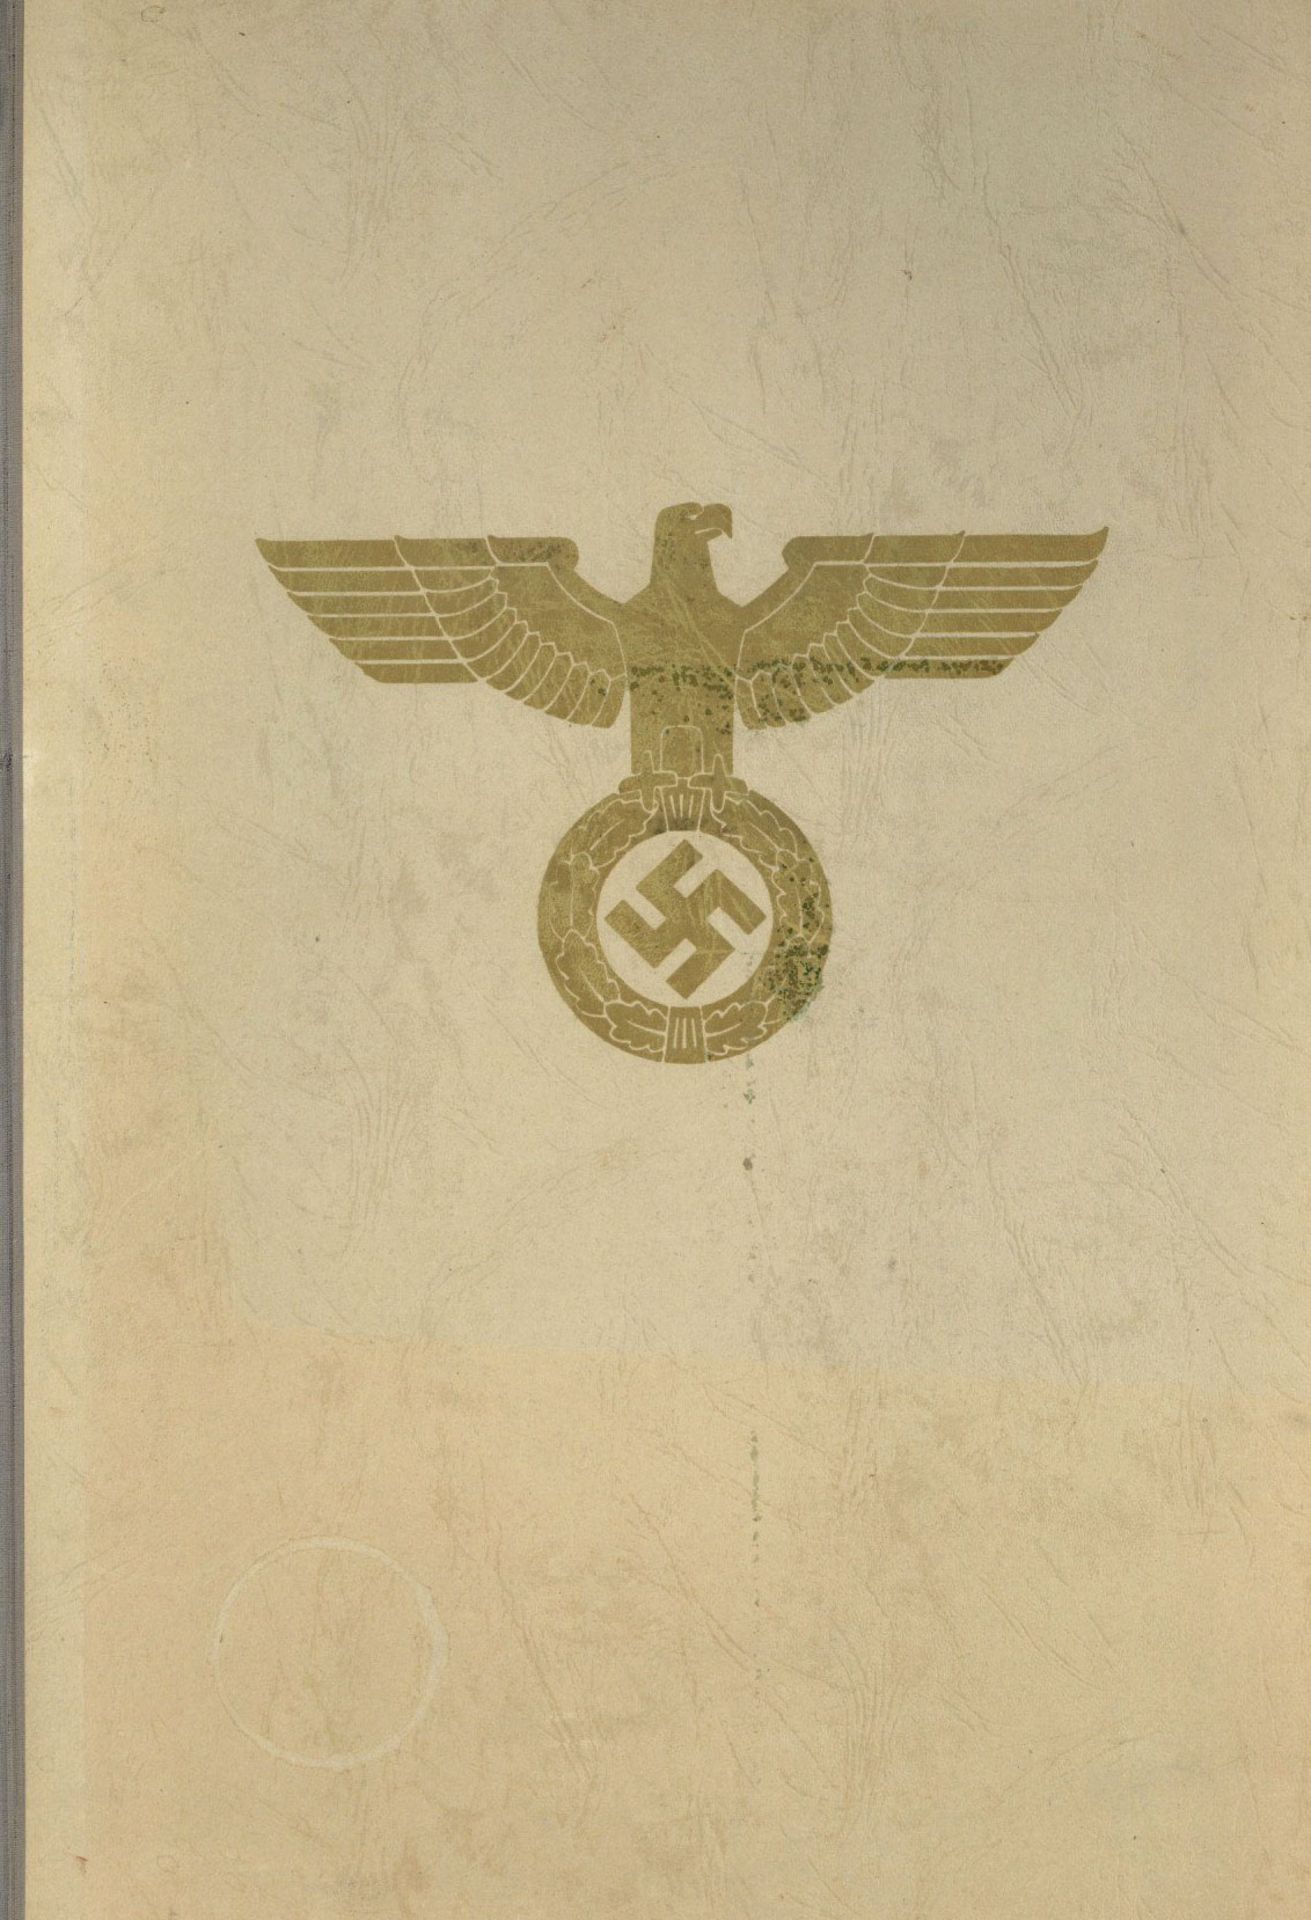 Verleihungsurkunde vom Zentralverlag der NSDAP zur Geburt eines Kindes am 28.8.1943, inkl. 5